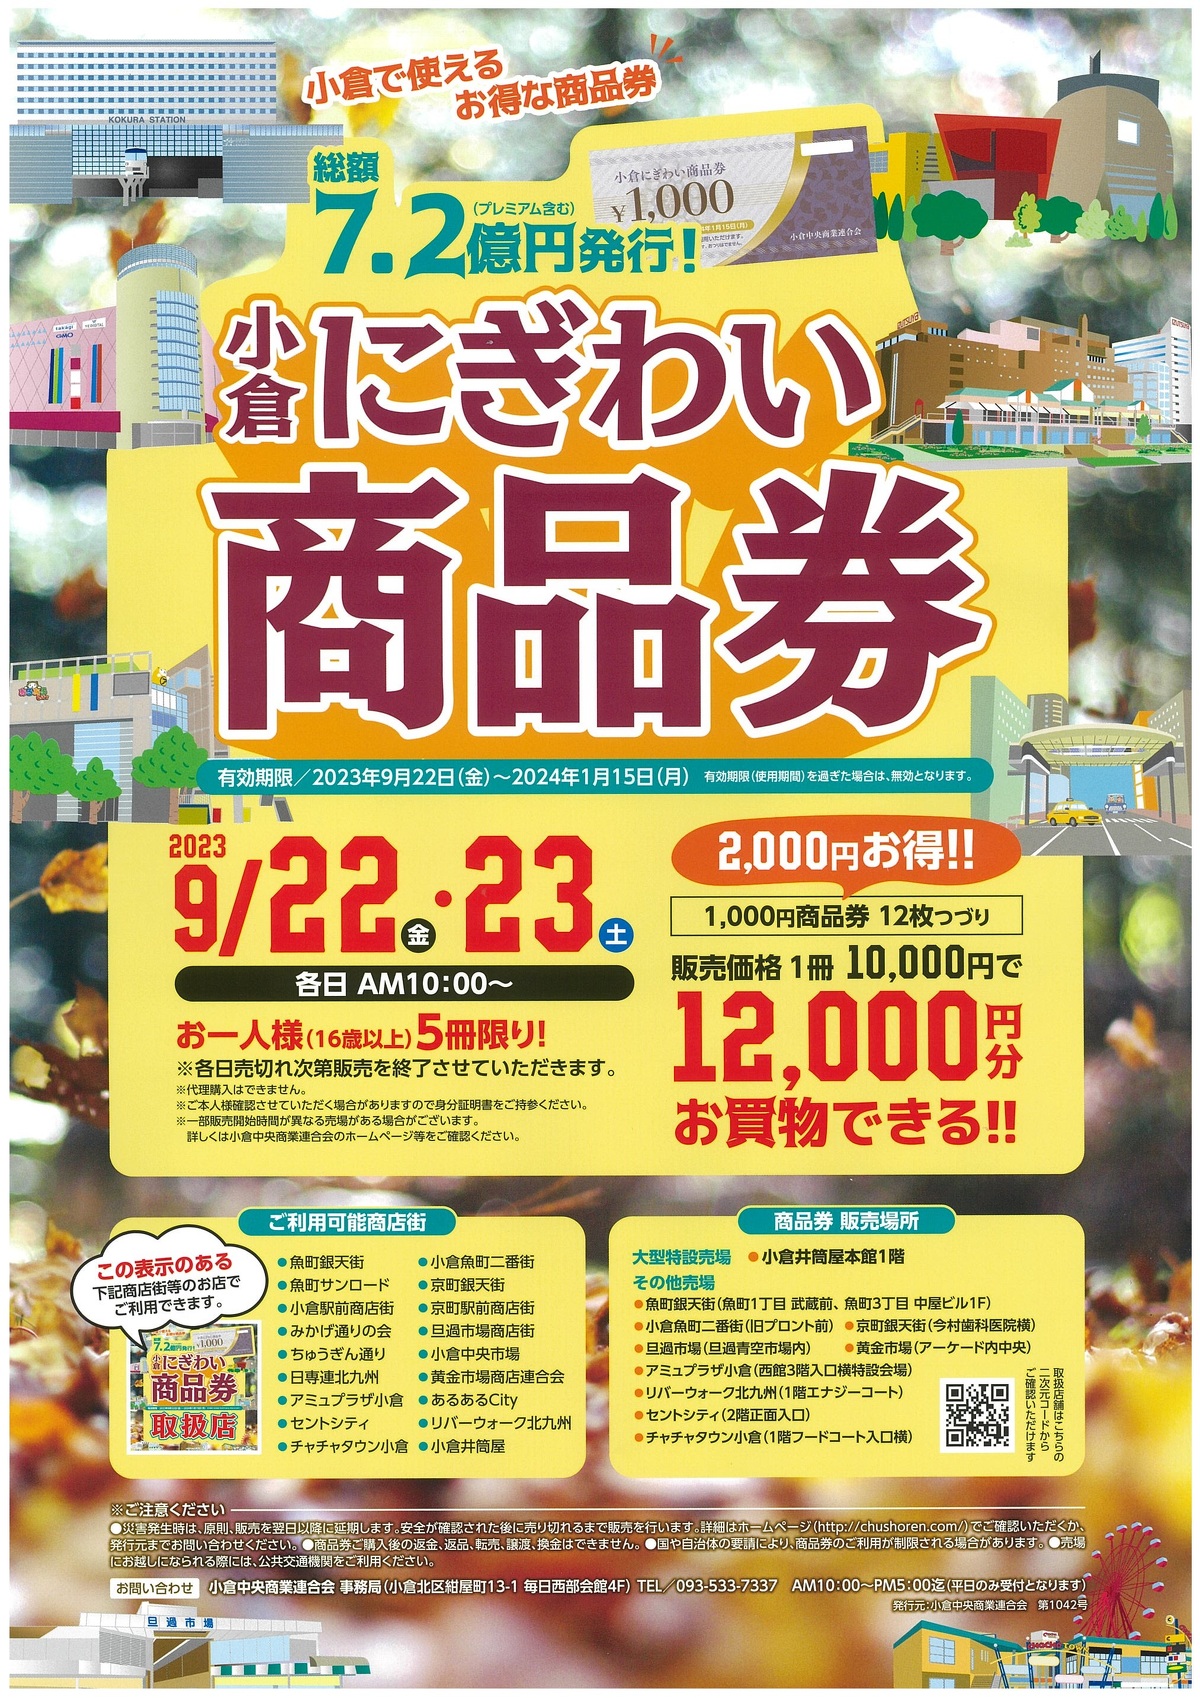 「小倉にぎわい商品券」販売！ | イベント&お知らせ | 北九州市魚町 